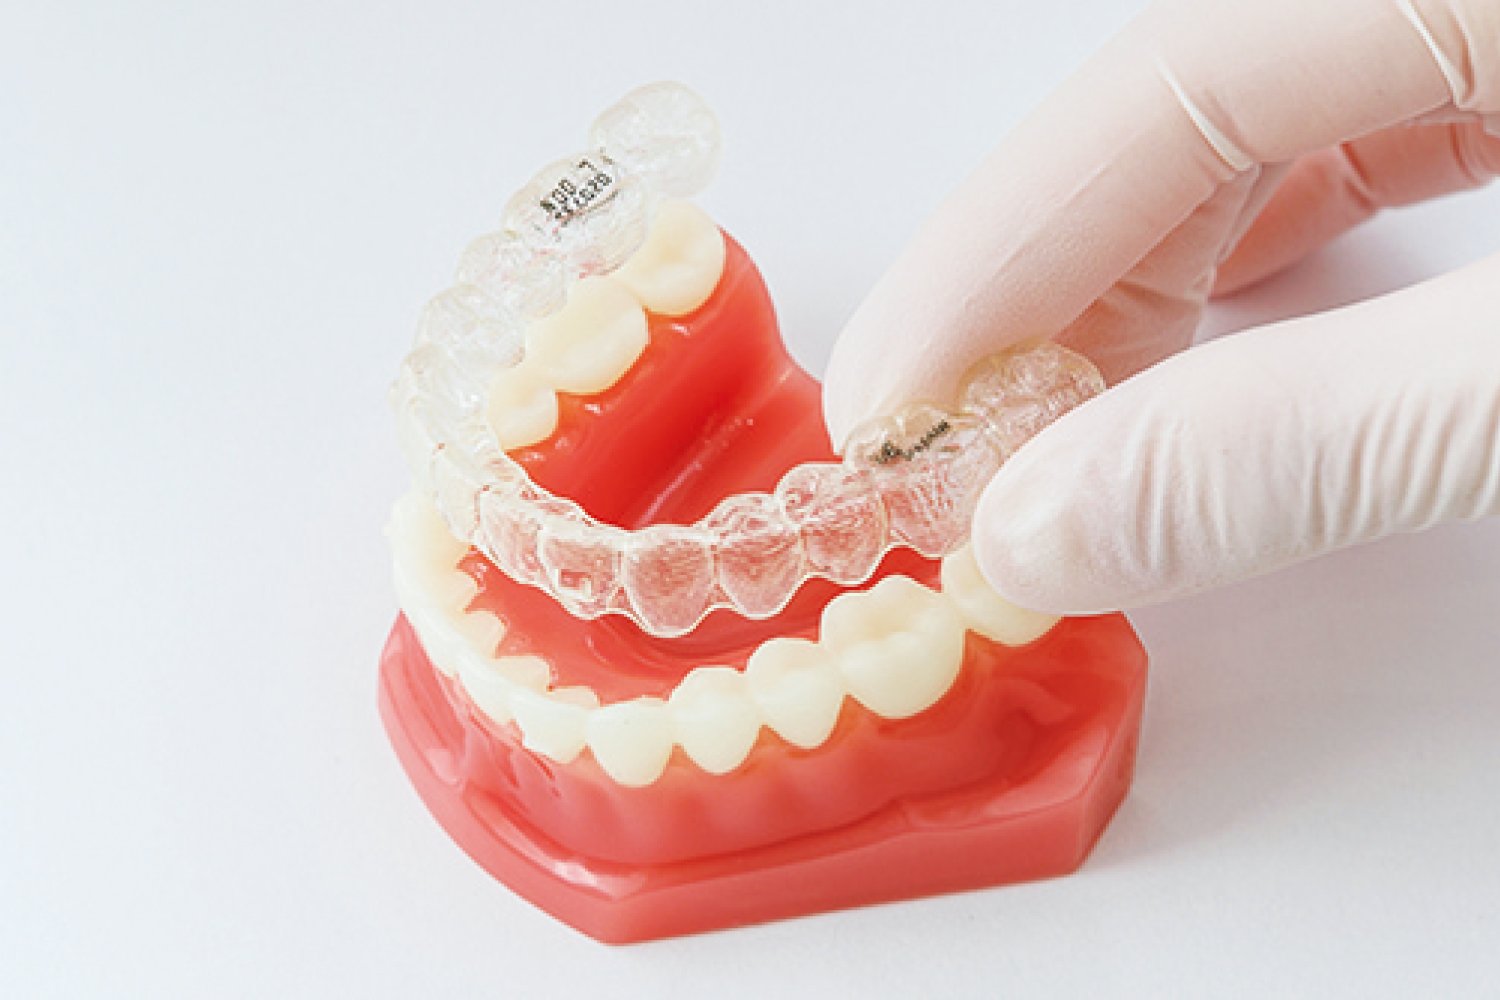 歯列矯正はインビザライン（マウスピース）、ワイヤー、裏側矯正から選べます